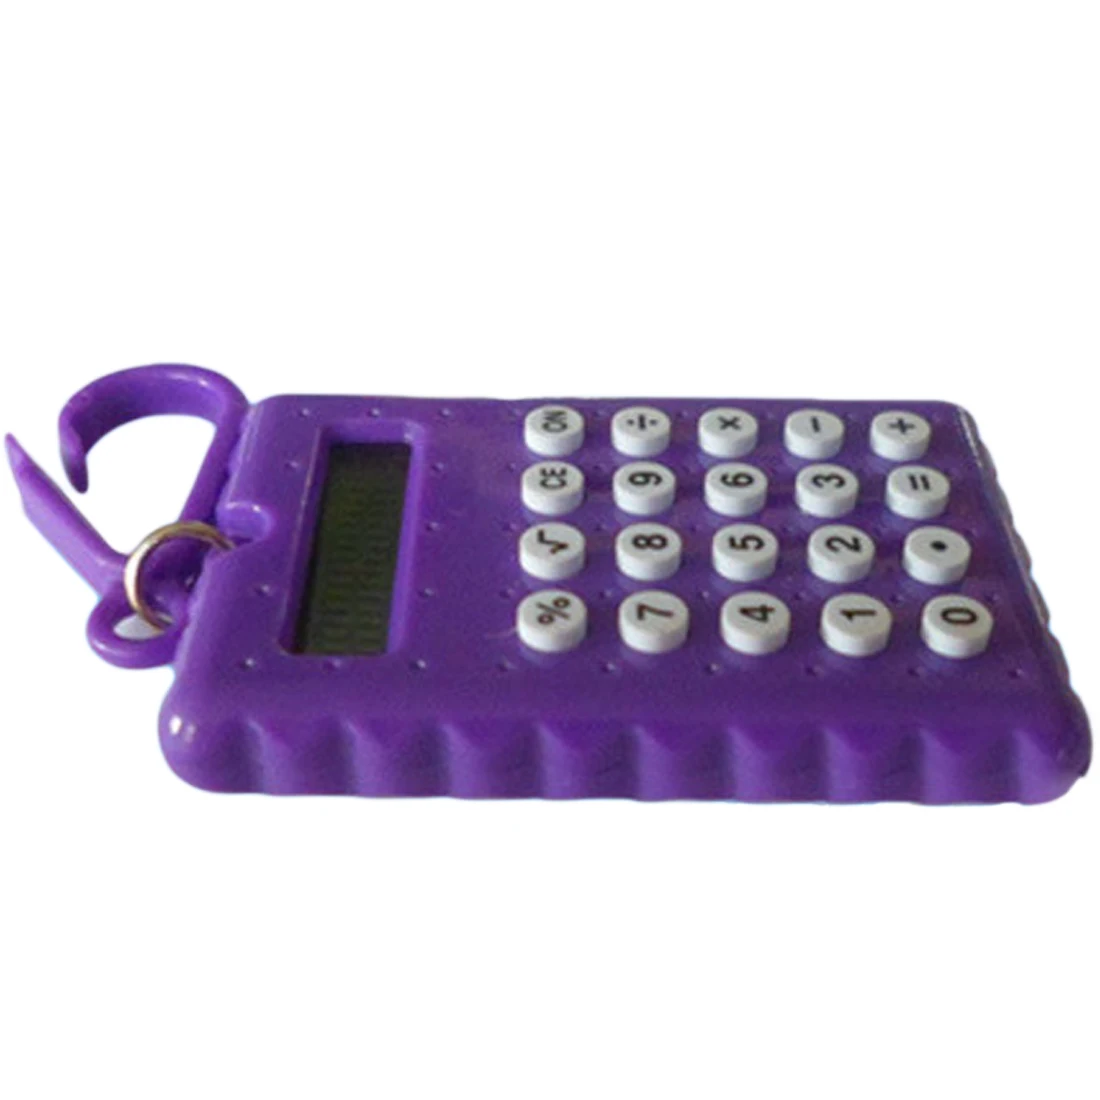 NOYOKERE Лидер продаж студенческий мини электронный калькулятор карамельный цвет расчет офисные принадлежности подарок супер маленький